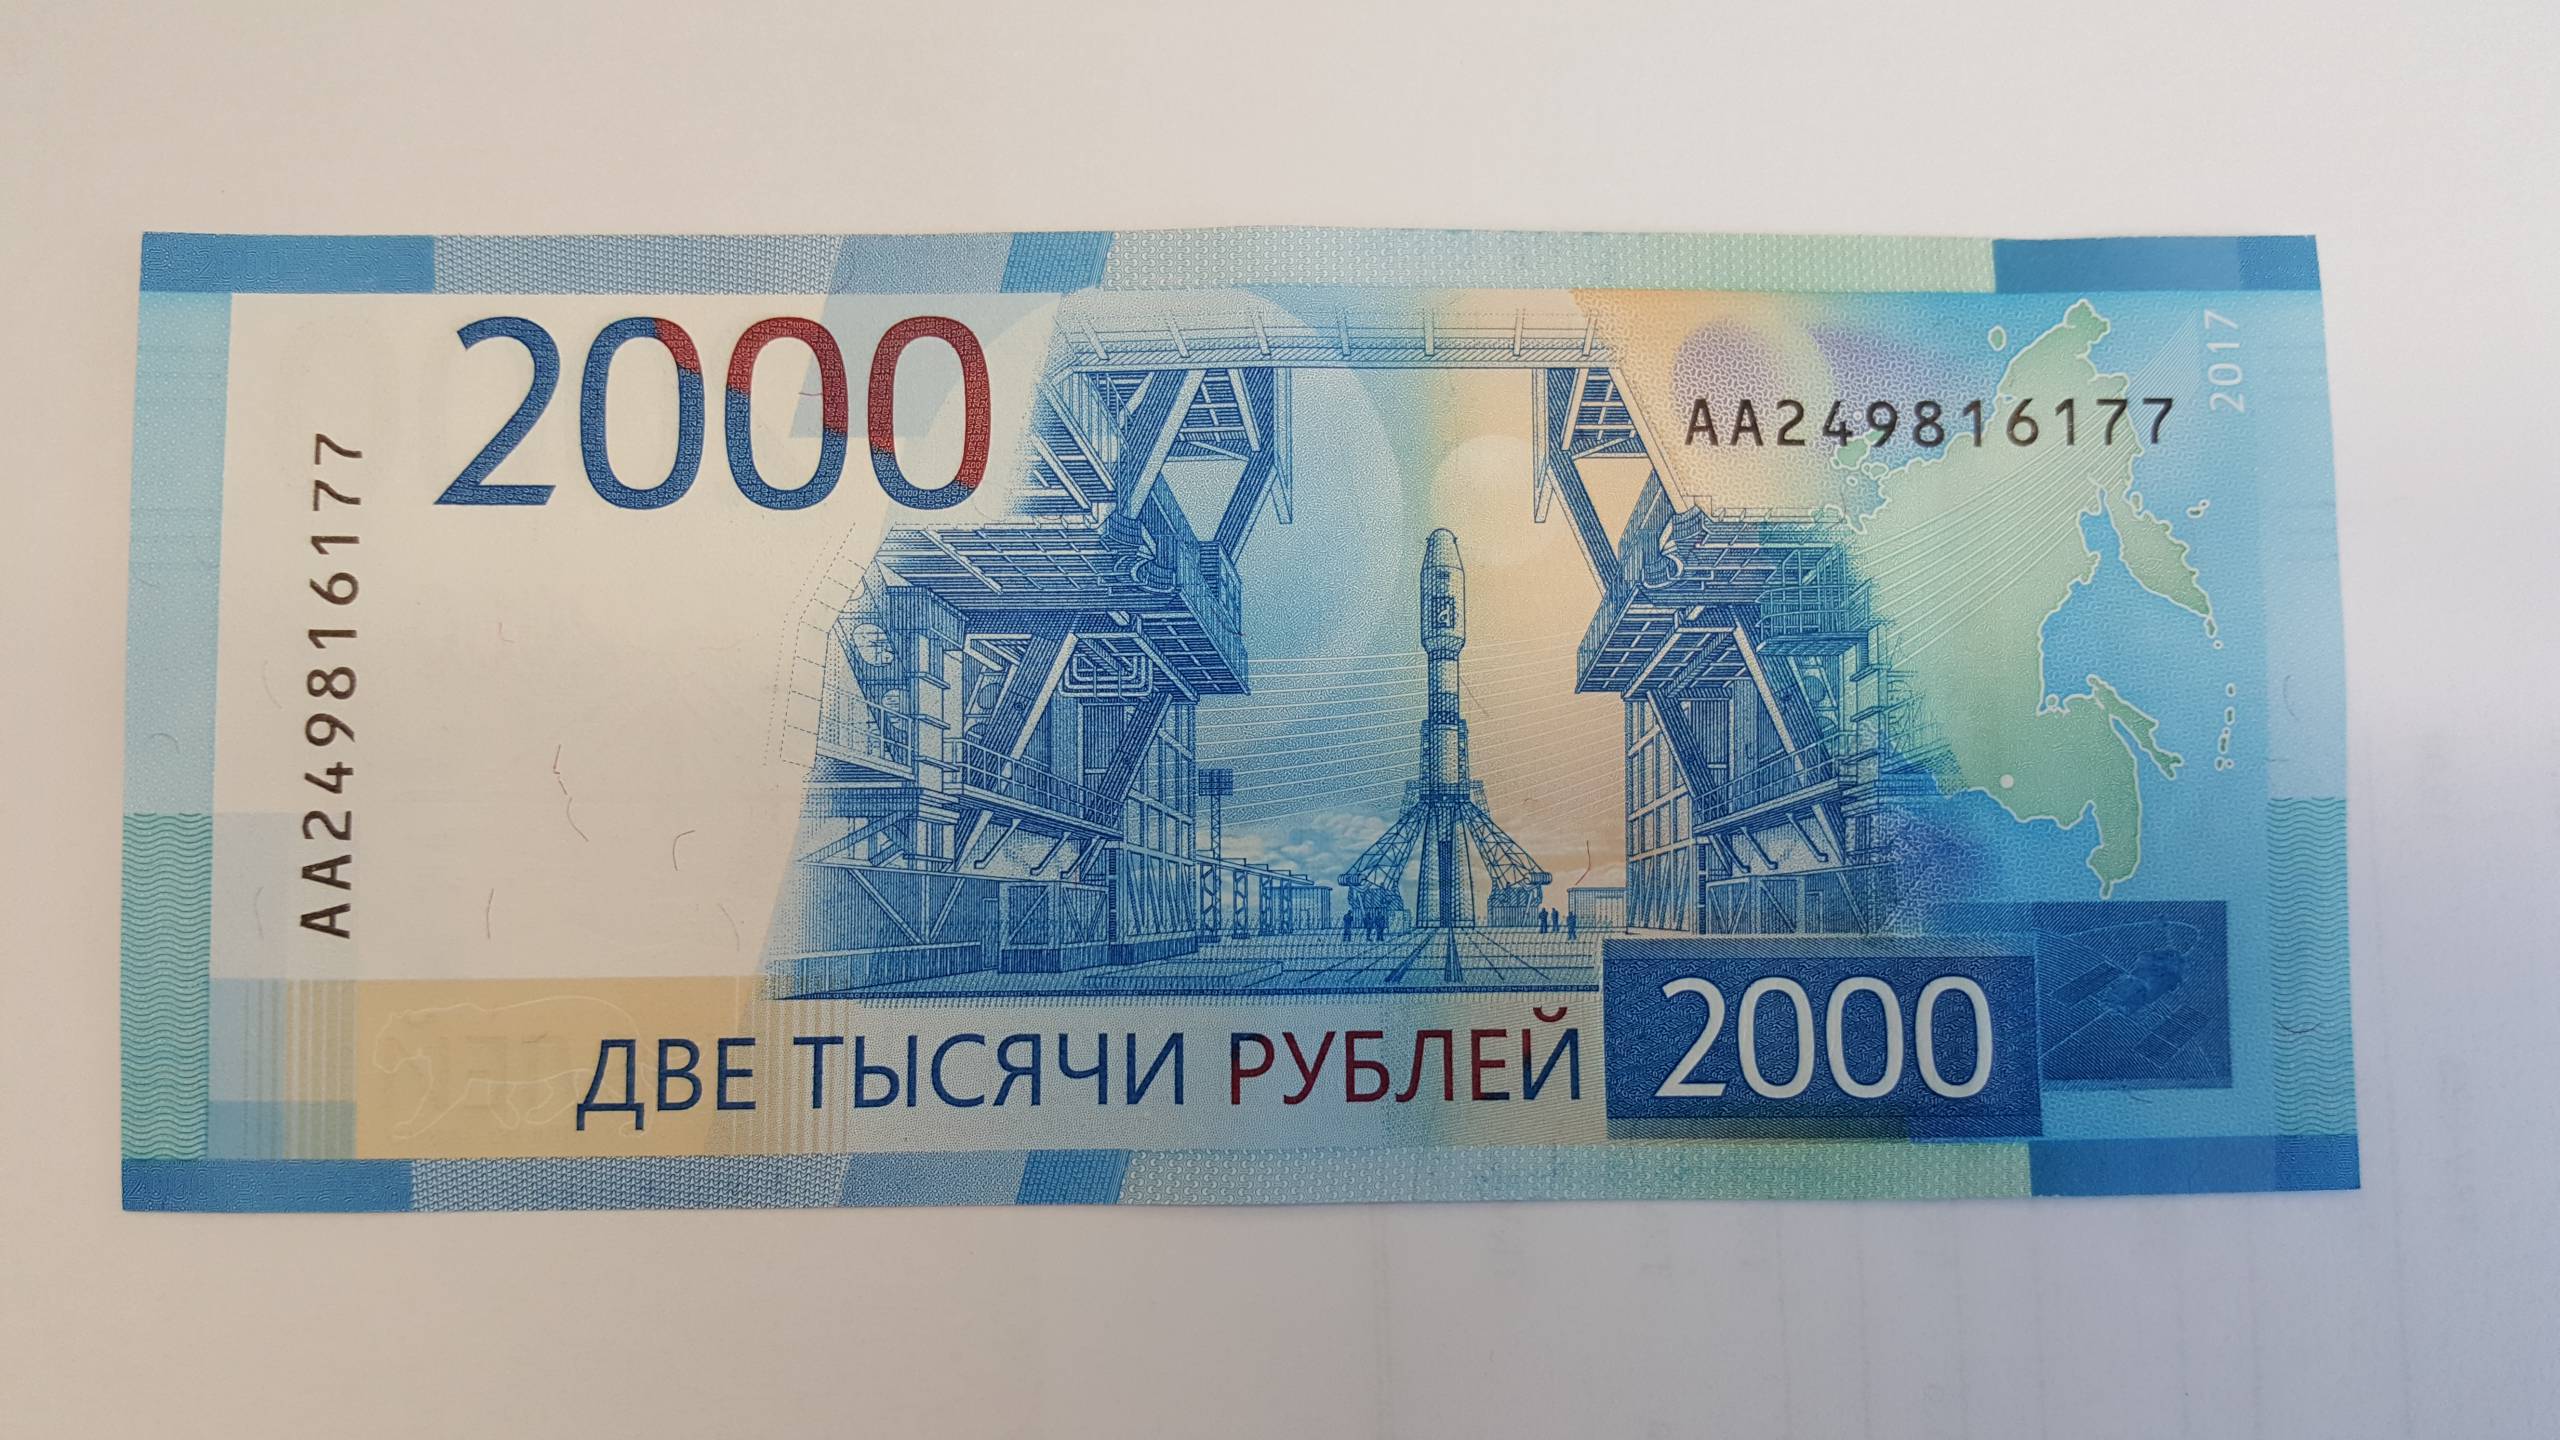 2 1000 8 года. Купюра 2000. 2000 Рублей. 2000 Рублей банкнота. Две тысячи рублей купюра.